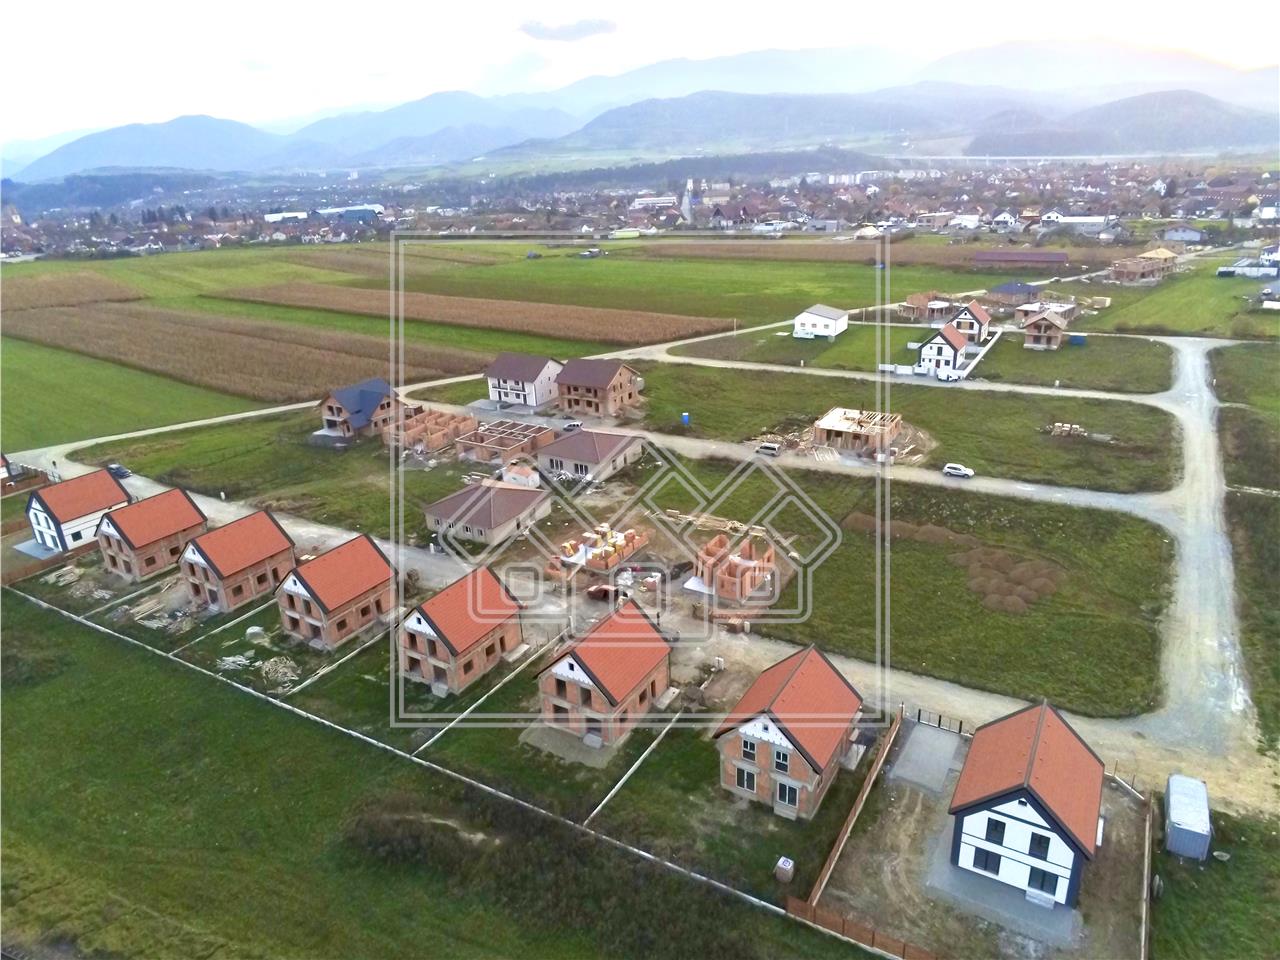 Casa de vanzare in Sibiu -Talmaciu- Casa VERDE,independenta energetic